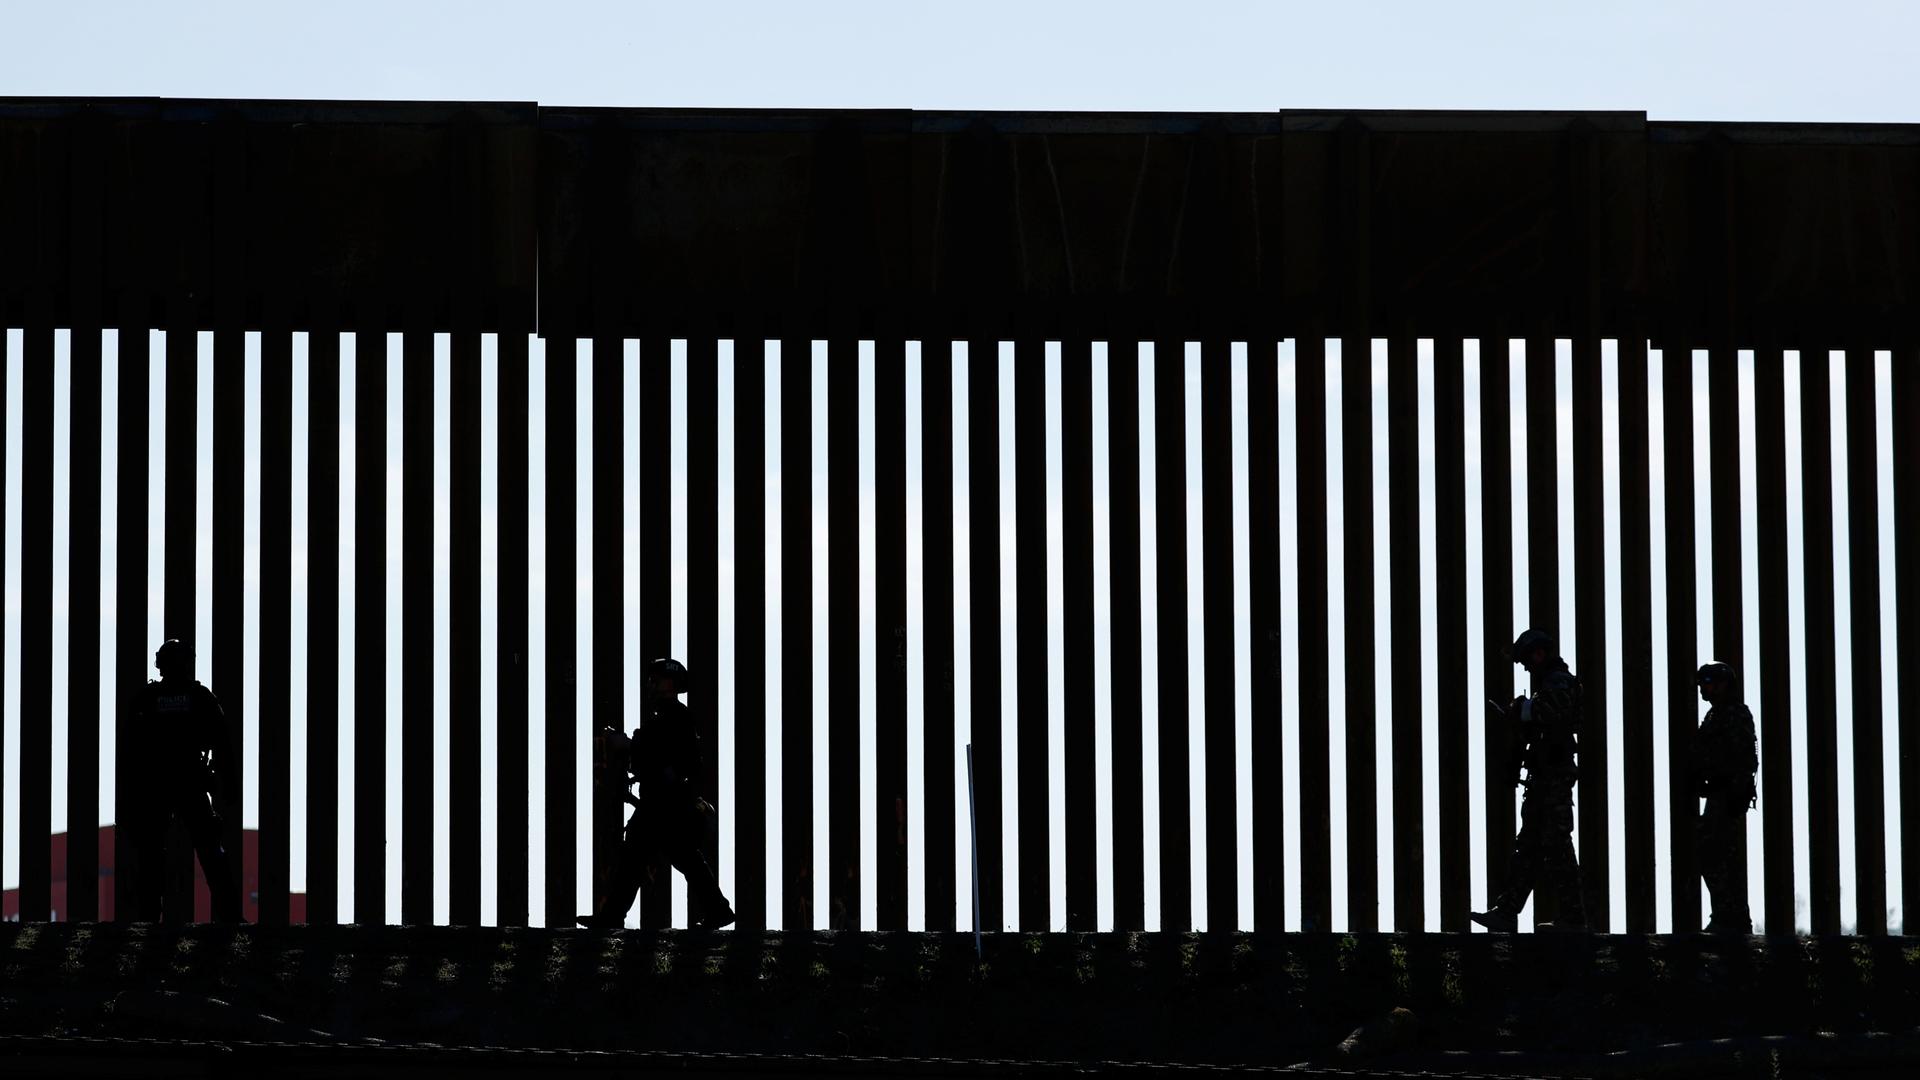 Shadow of patrolmen along slated wall at US border. 